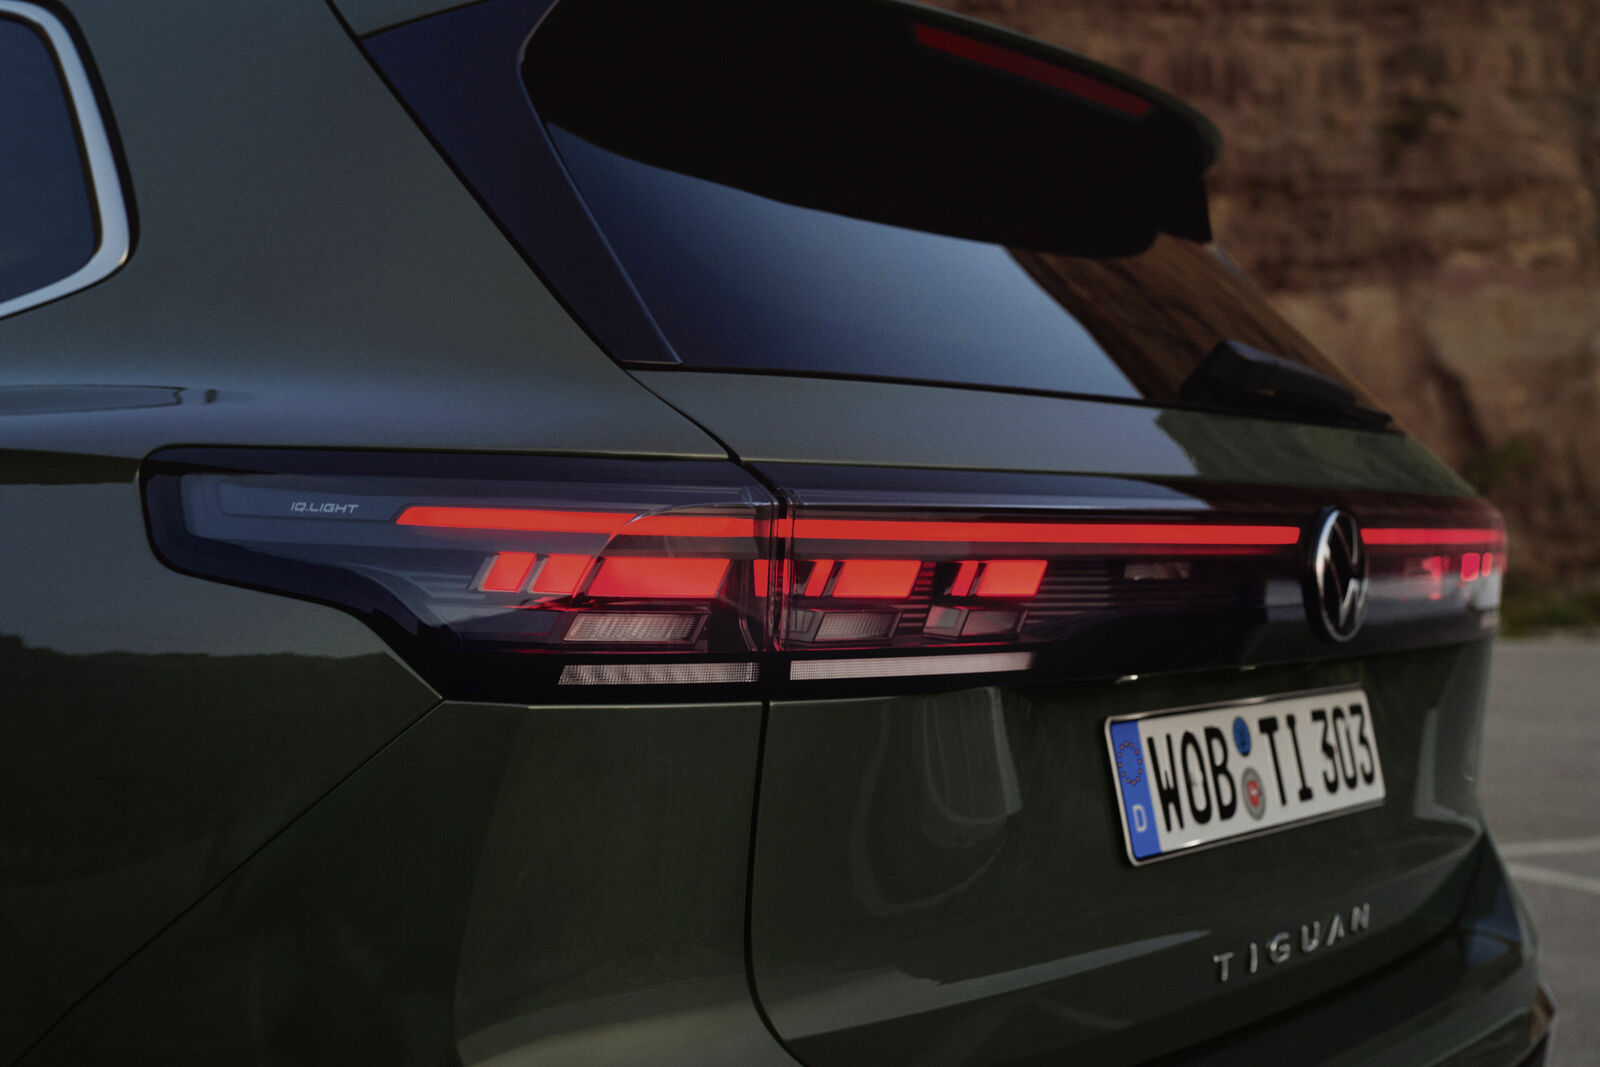 VW Tiguan 2024: Neuauflage als Benziner, Diesel und Hybrid